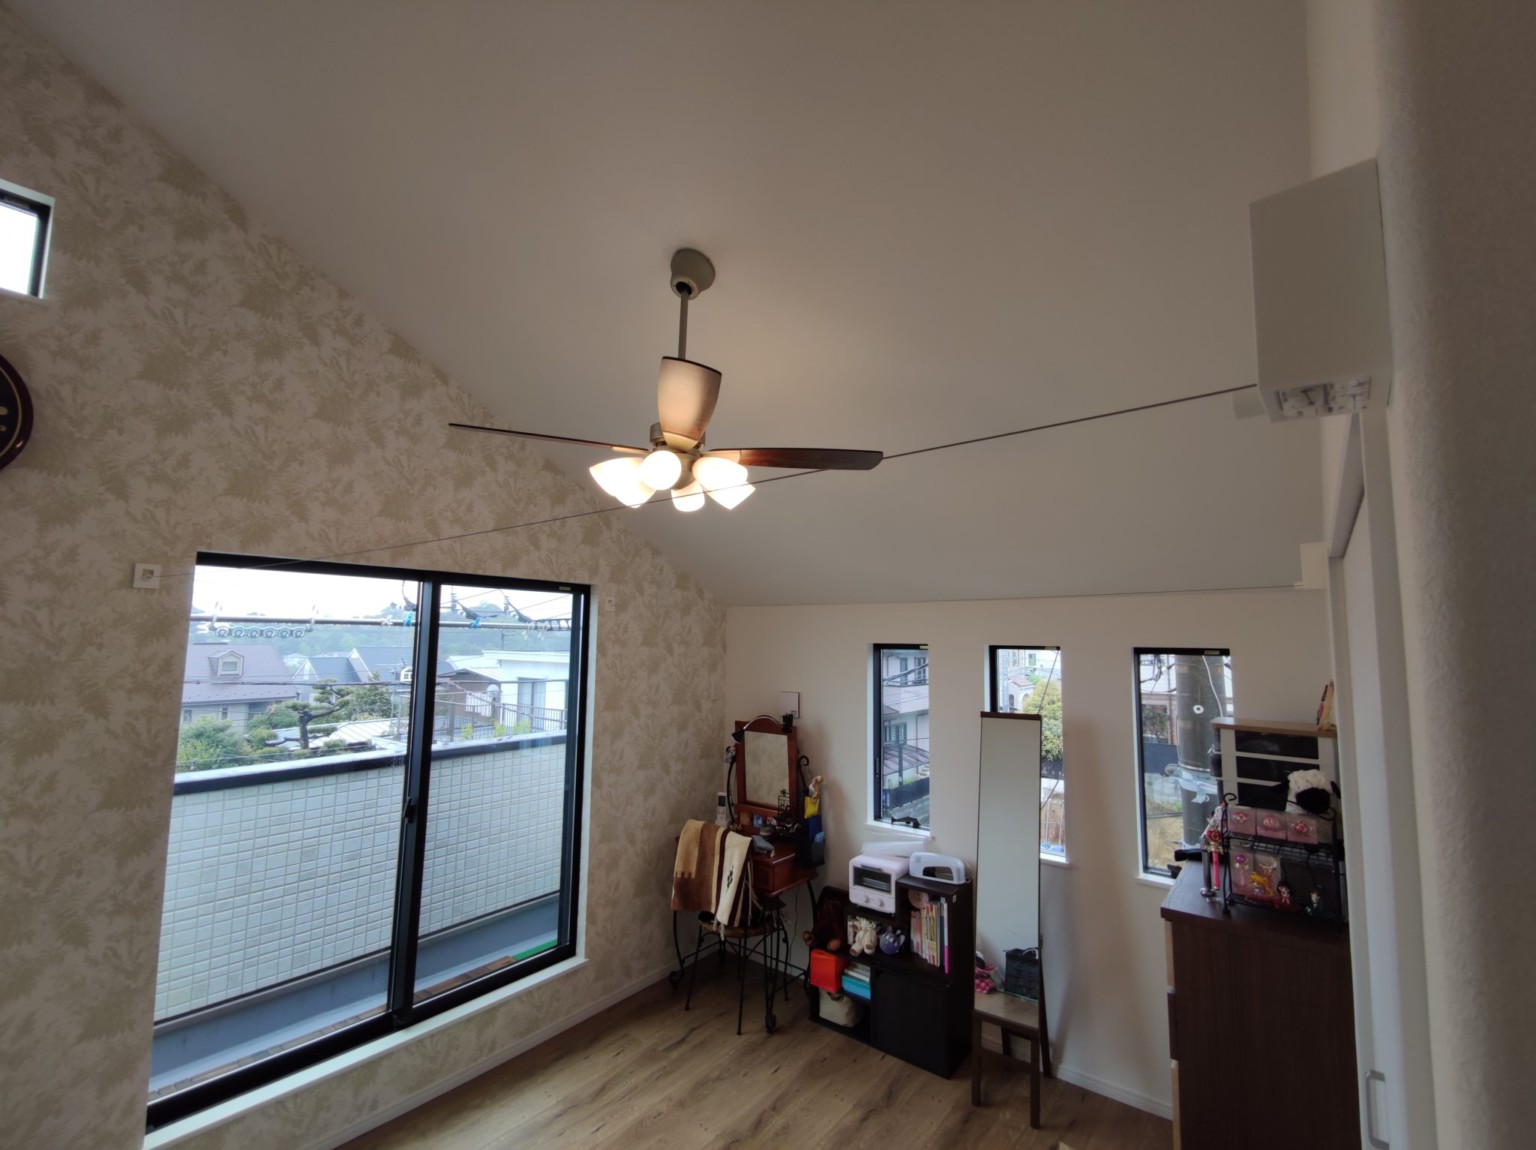 川崎市麻生区細山のお客さま宅でPid4Mを2台設置してきました